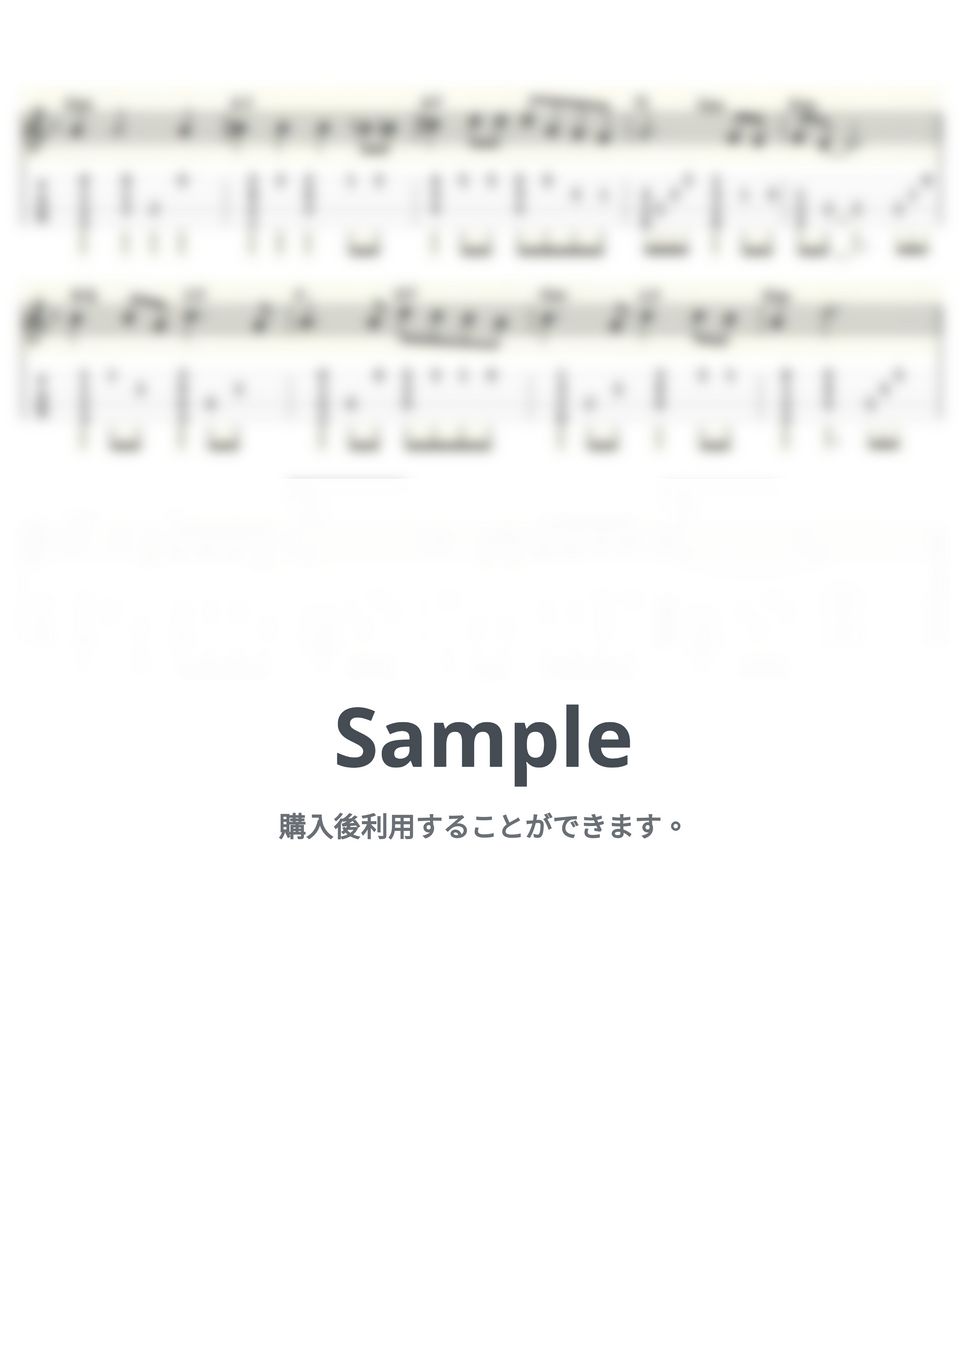 レターメン - 涙のくちづけ (ｳｸﾚﾚｿﾛ / High-G・Low-G / 中級) by ukulelepapa